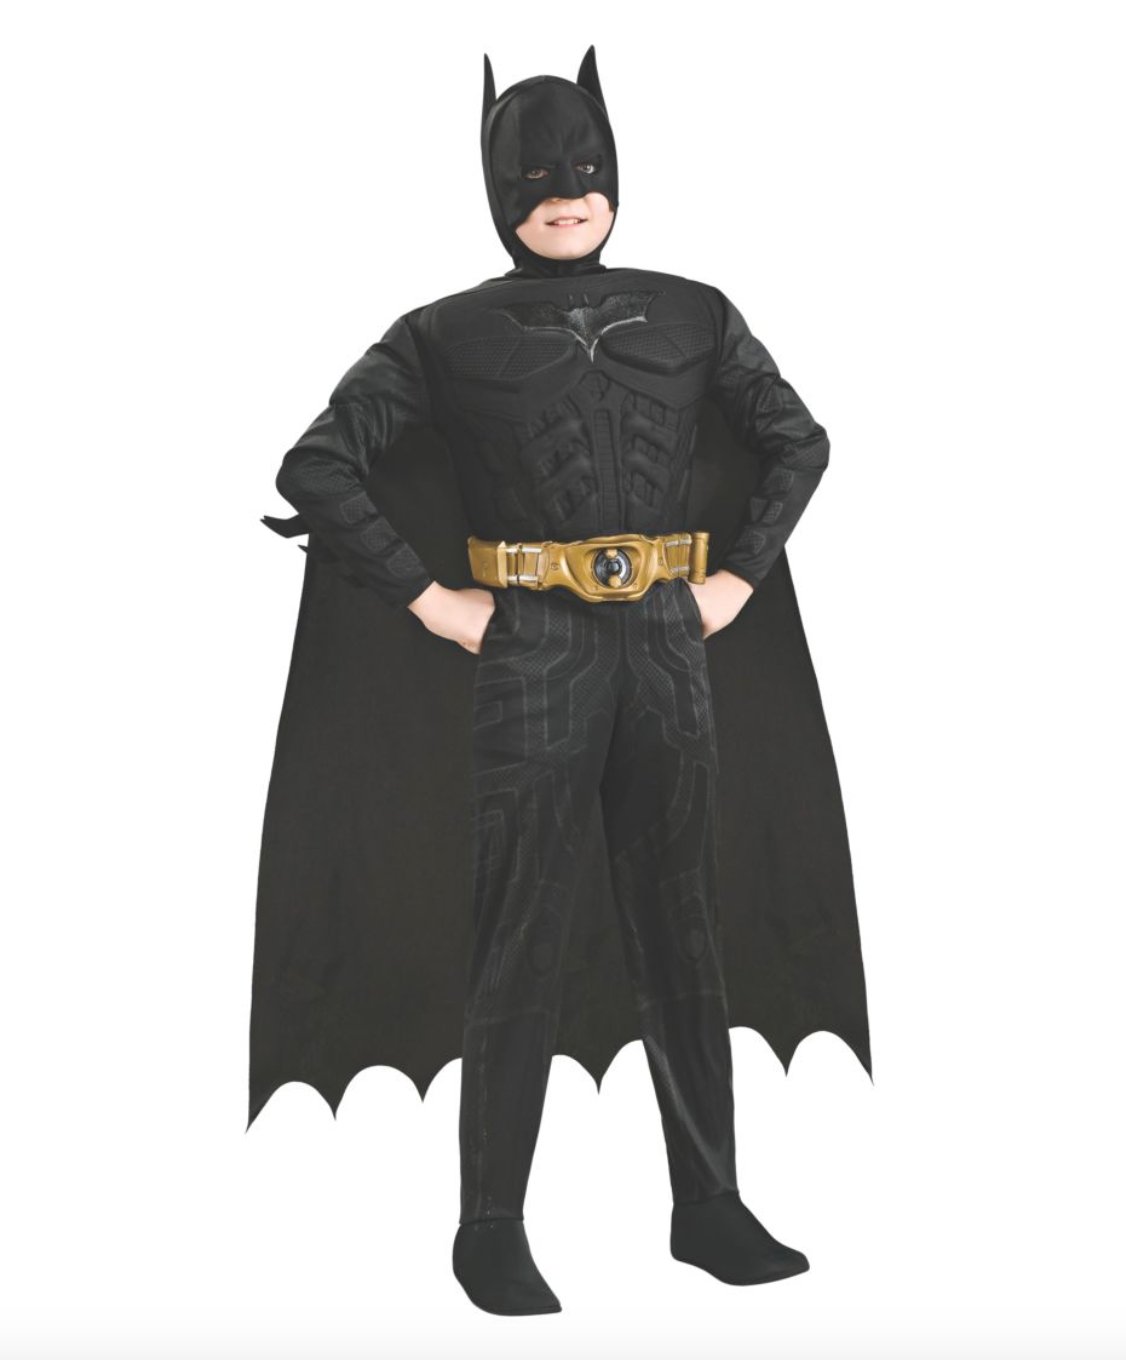 Costume Enfant Deluxe - Batman Party Shop